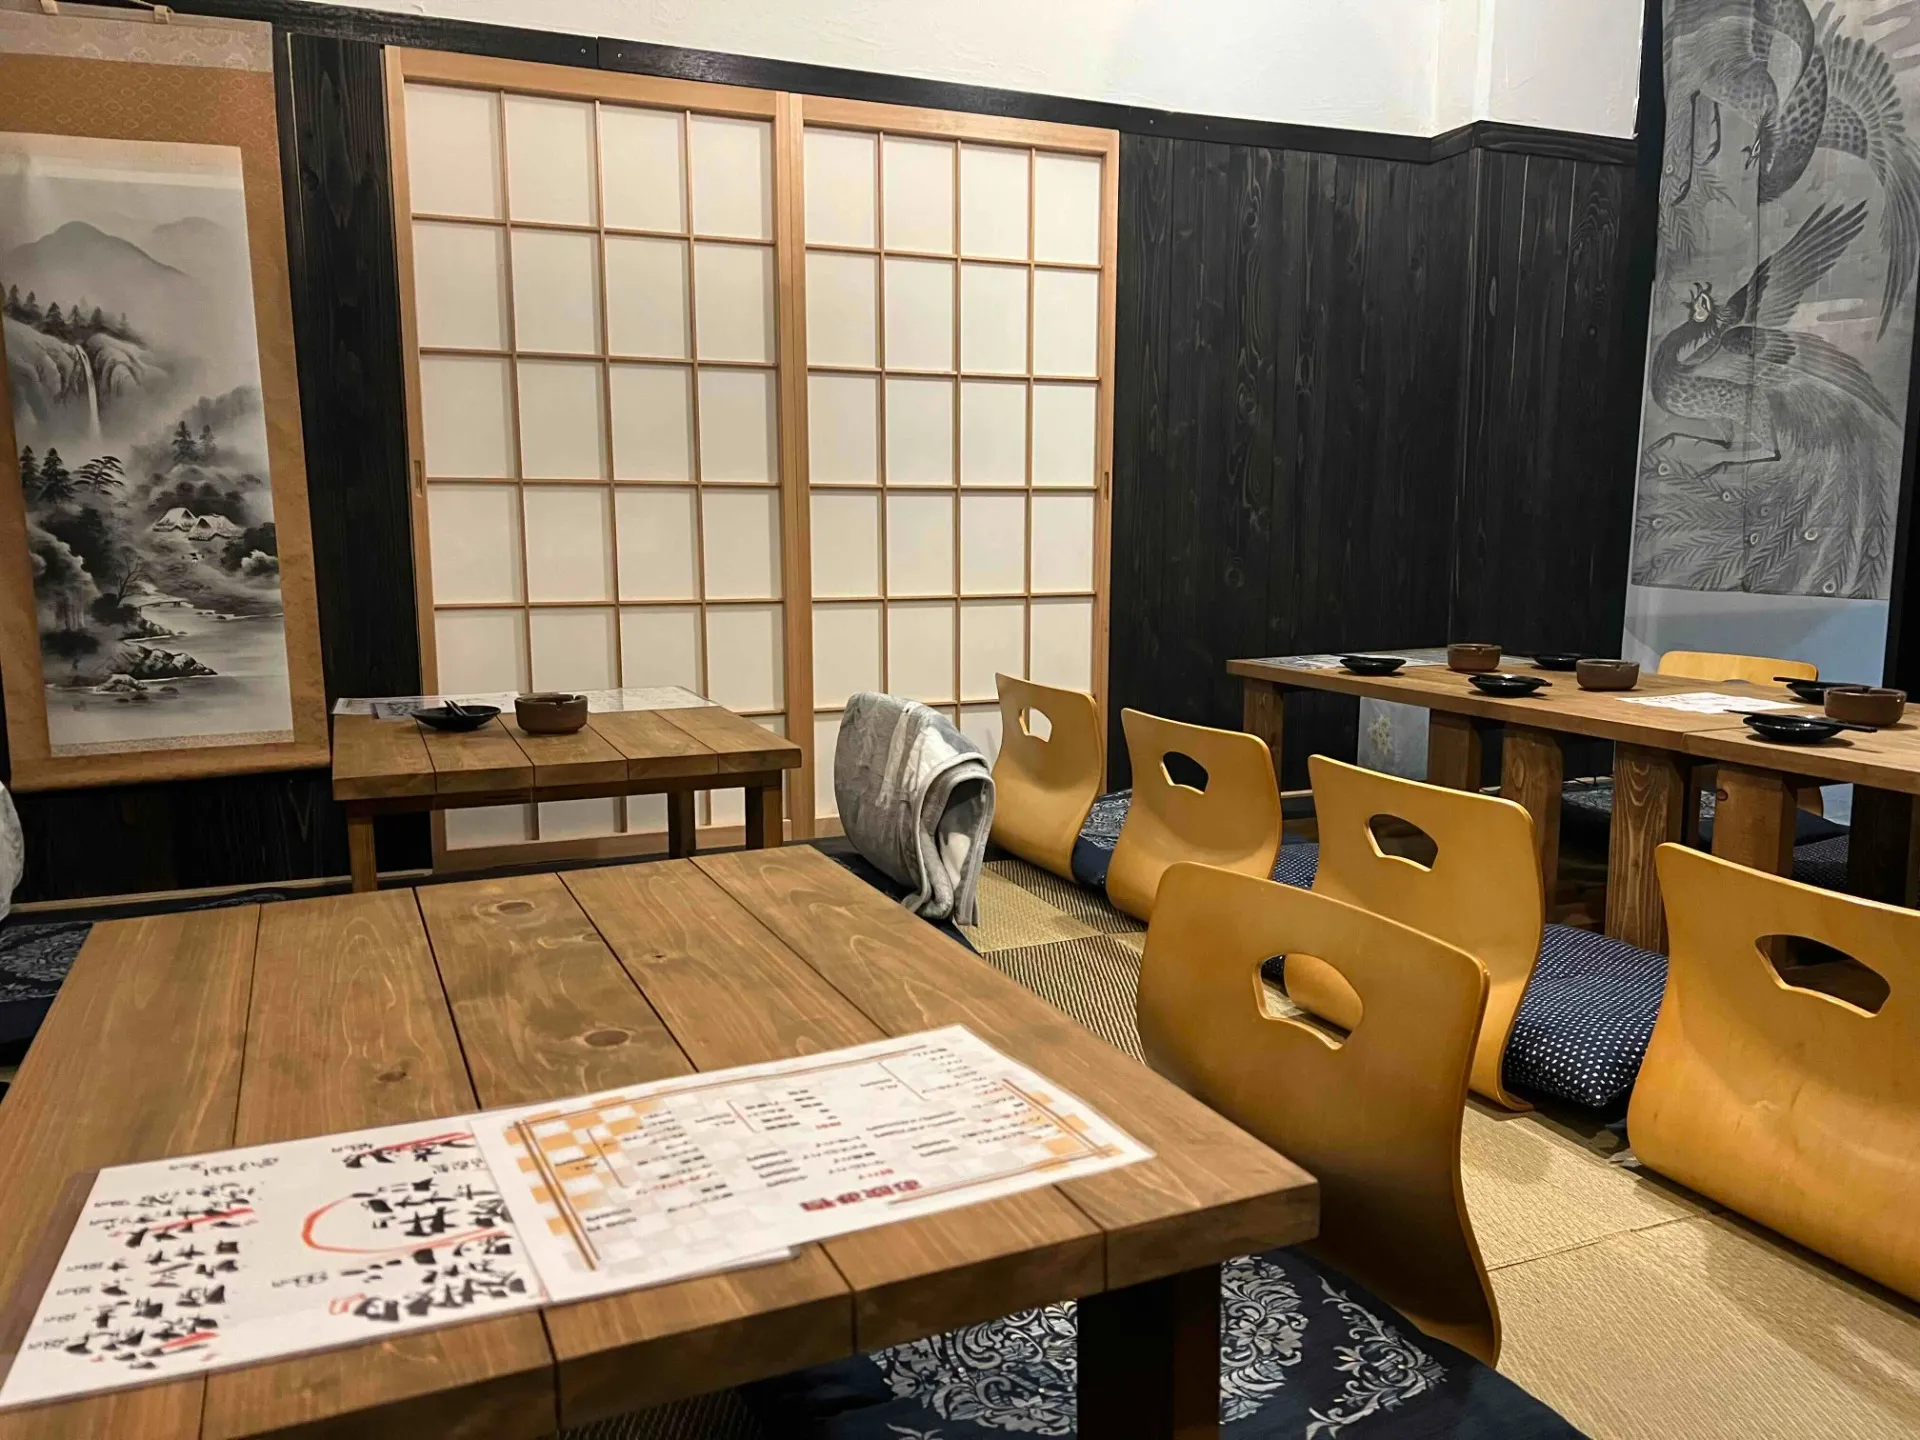 昭和レトロな空間で楽しむ和風創作料理